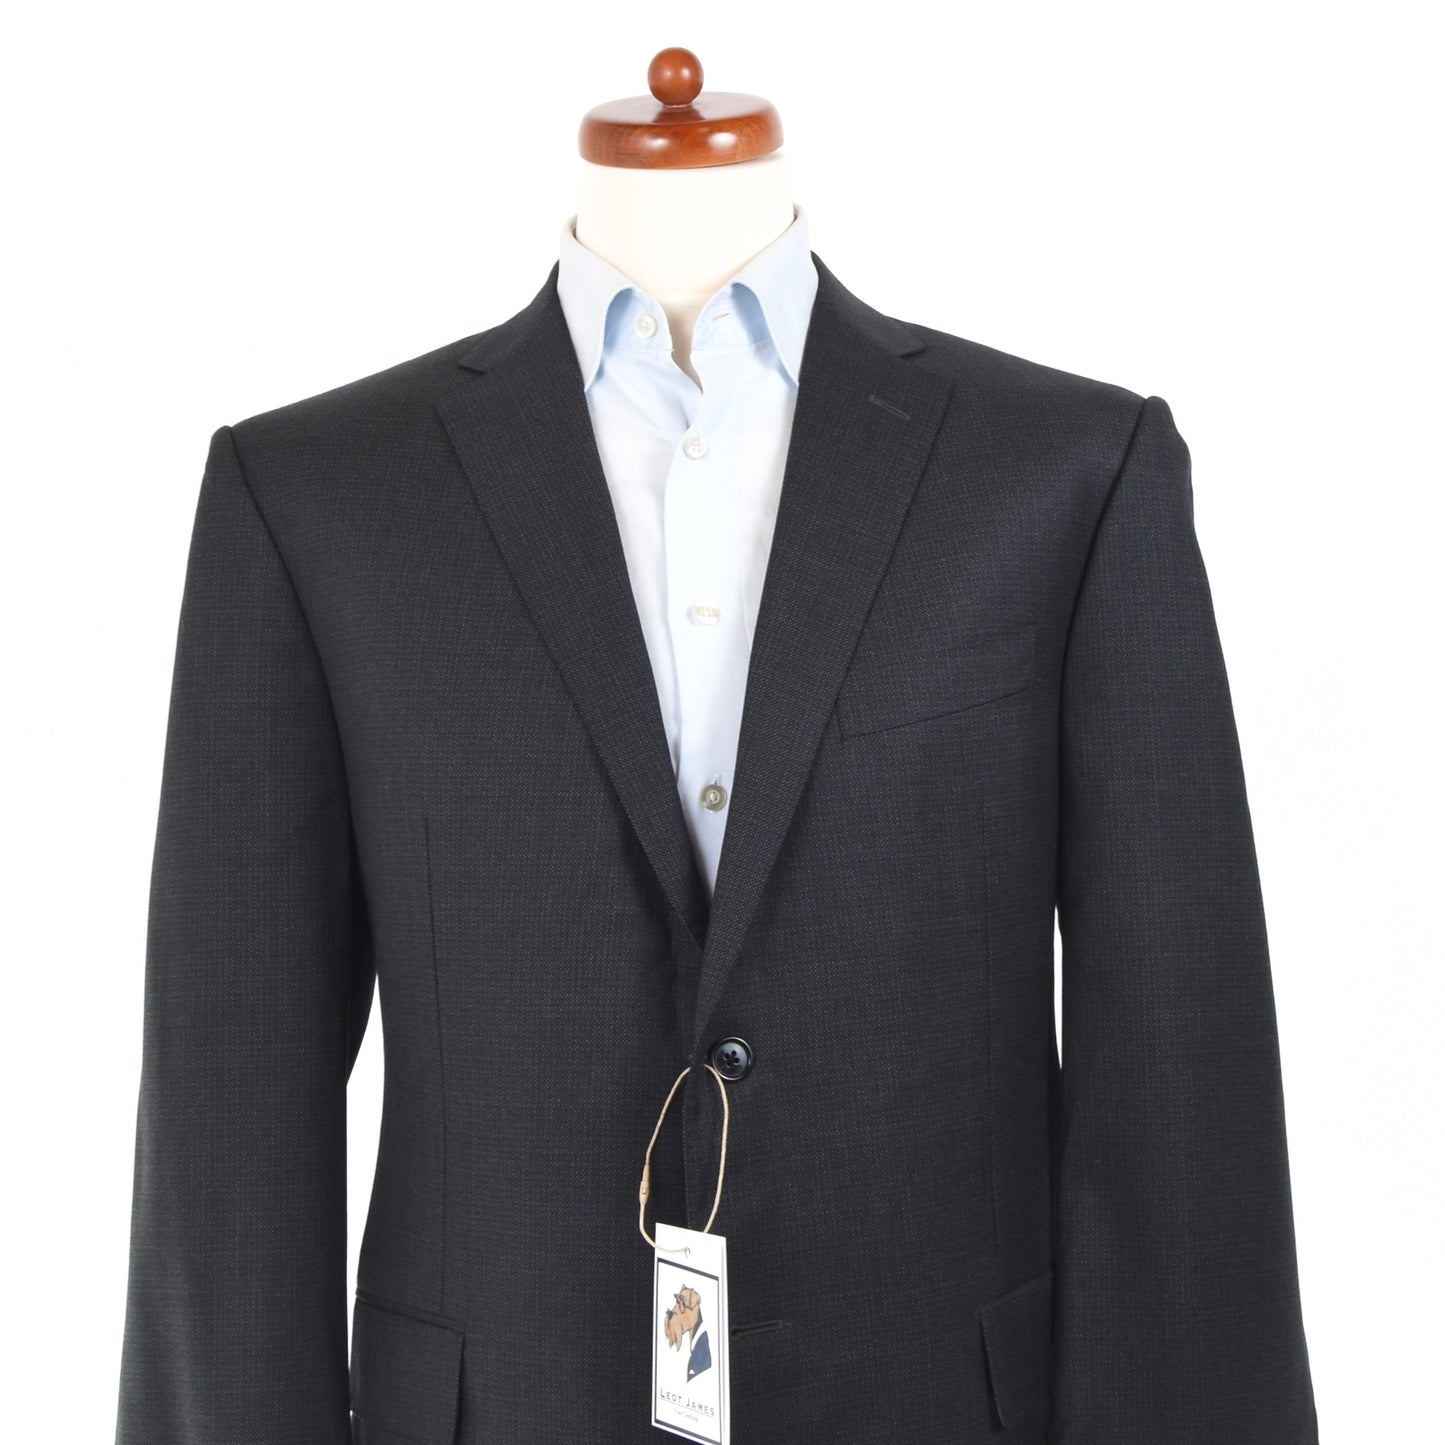 Corneliani Wool Suit Size 54 - Charcoal